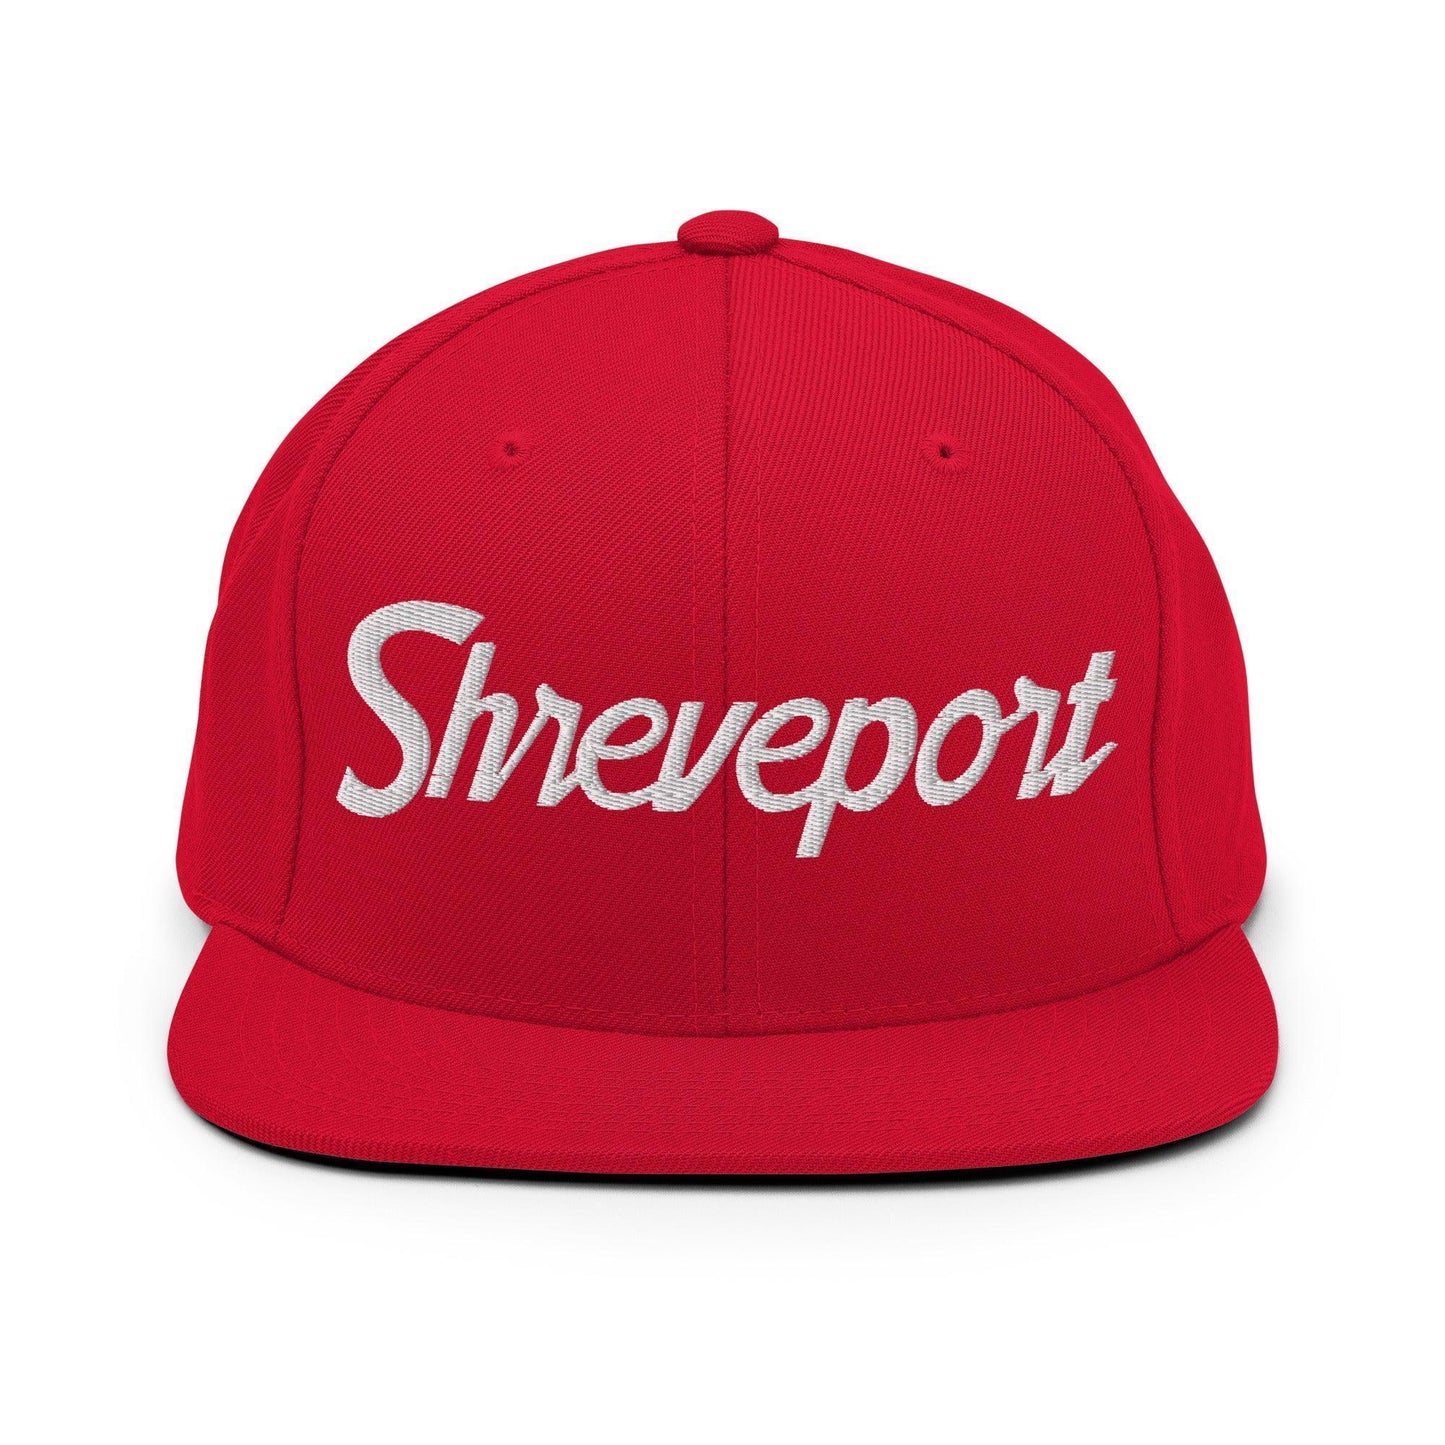 Shreveport Script Snapback Hat Red